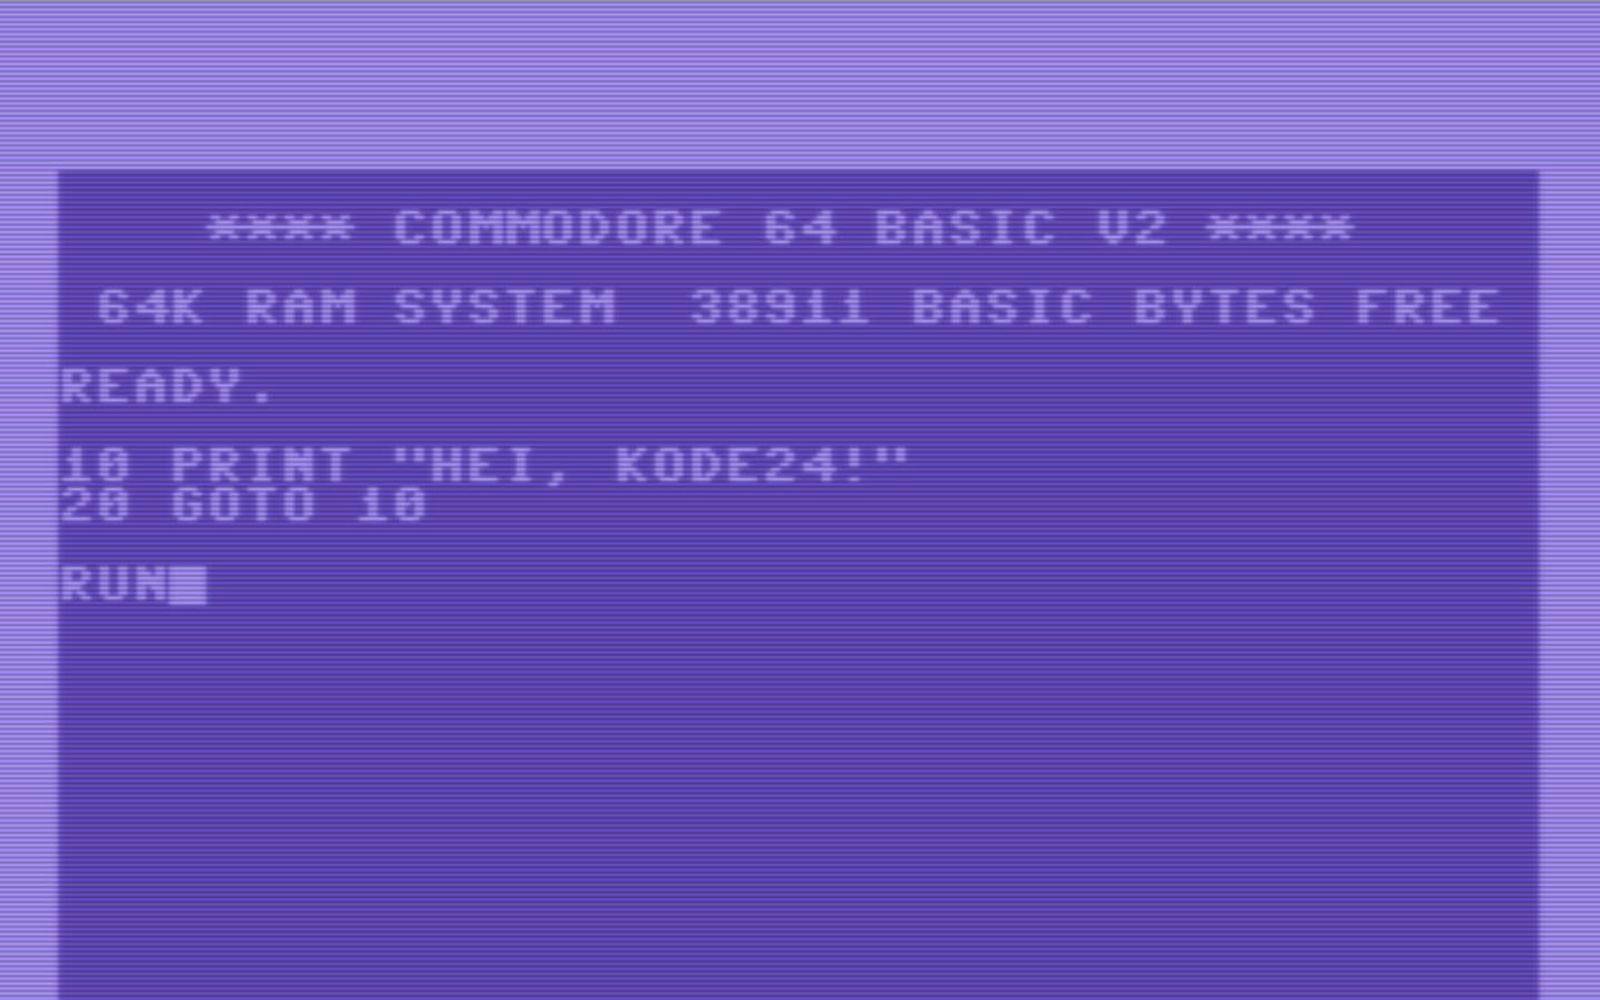 Skjermbilde fra Commodore 64, med teksten "hei, kode24".